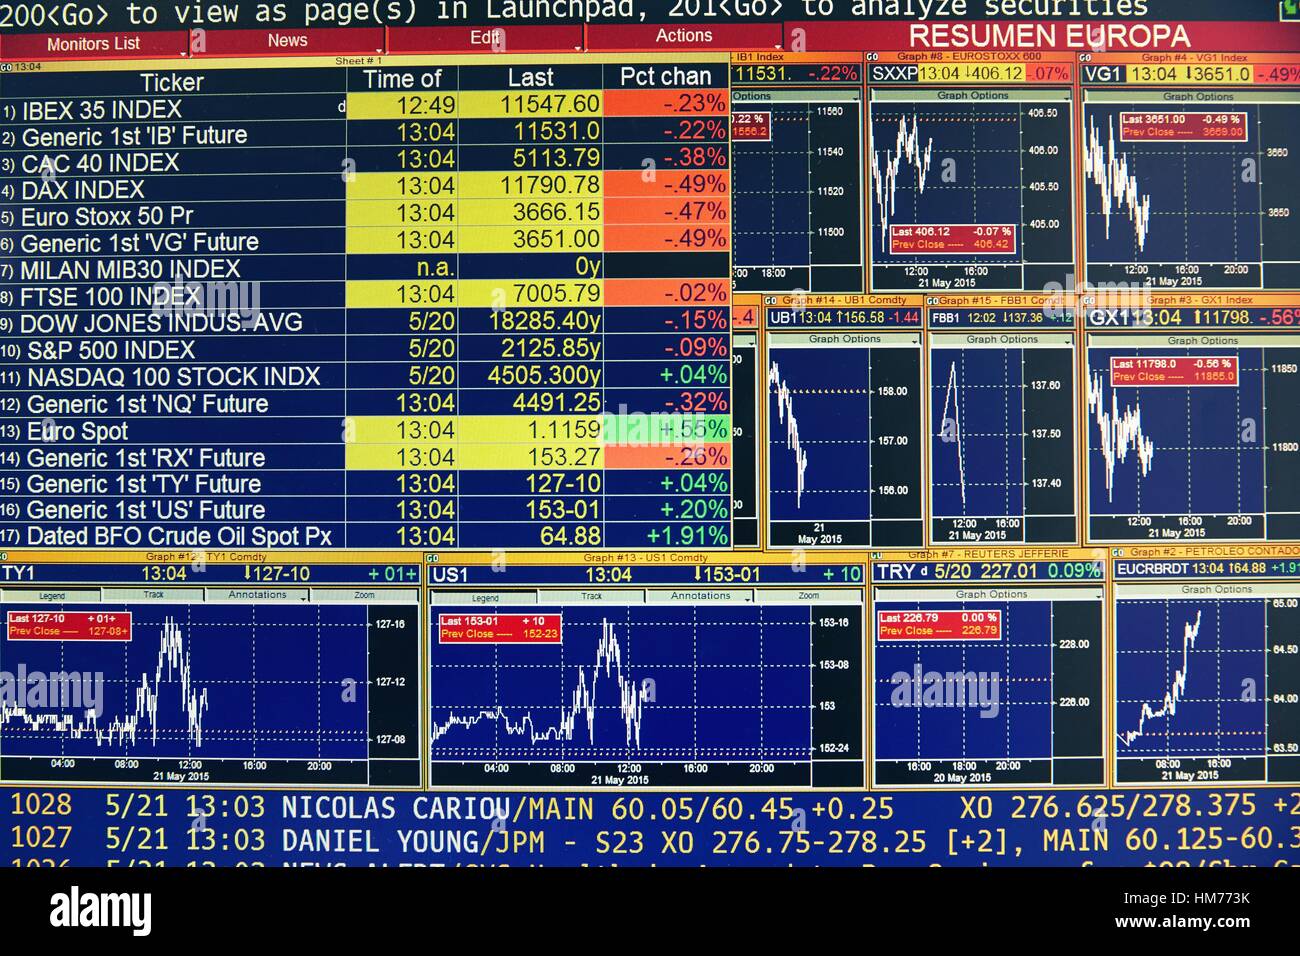 Gli schermi dei computer. stock market. i grafici Foto Stock